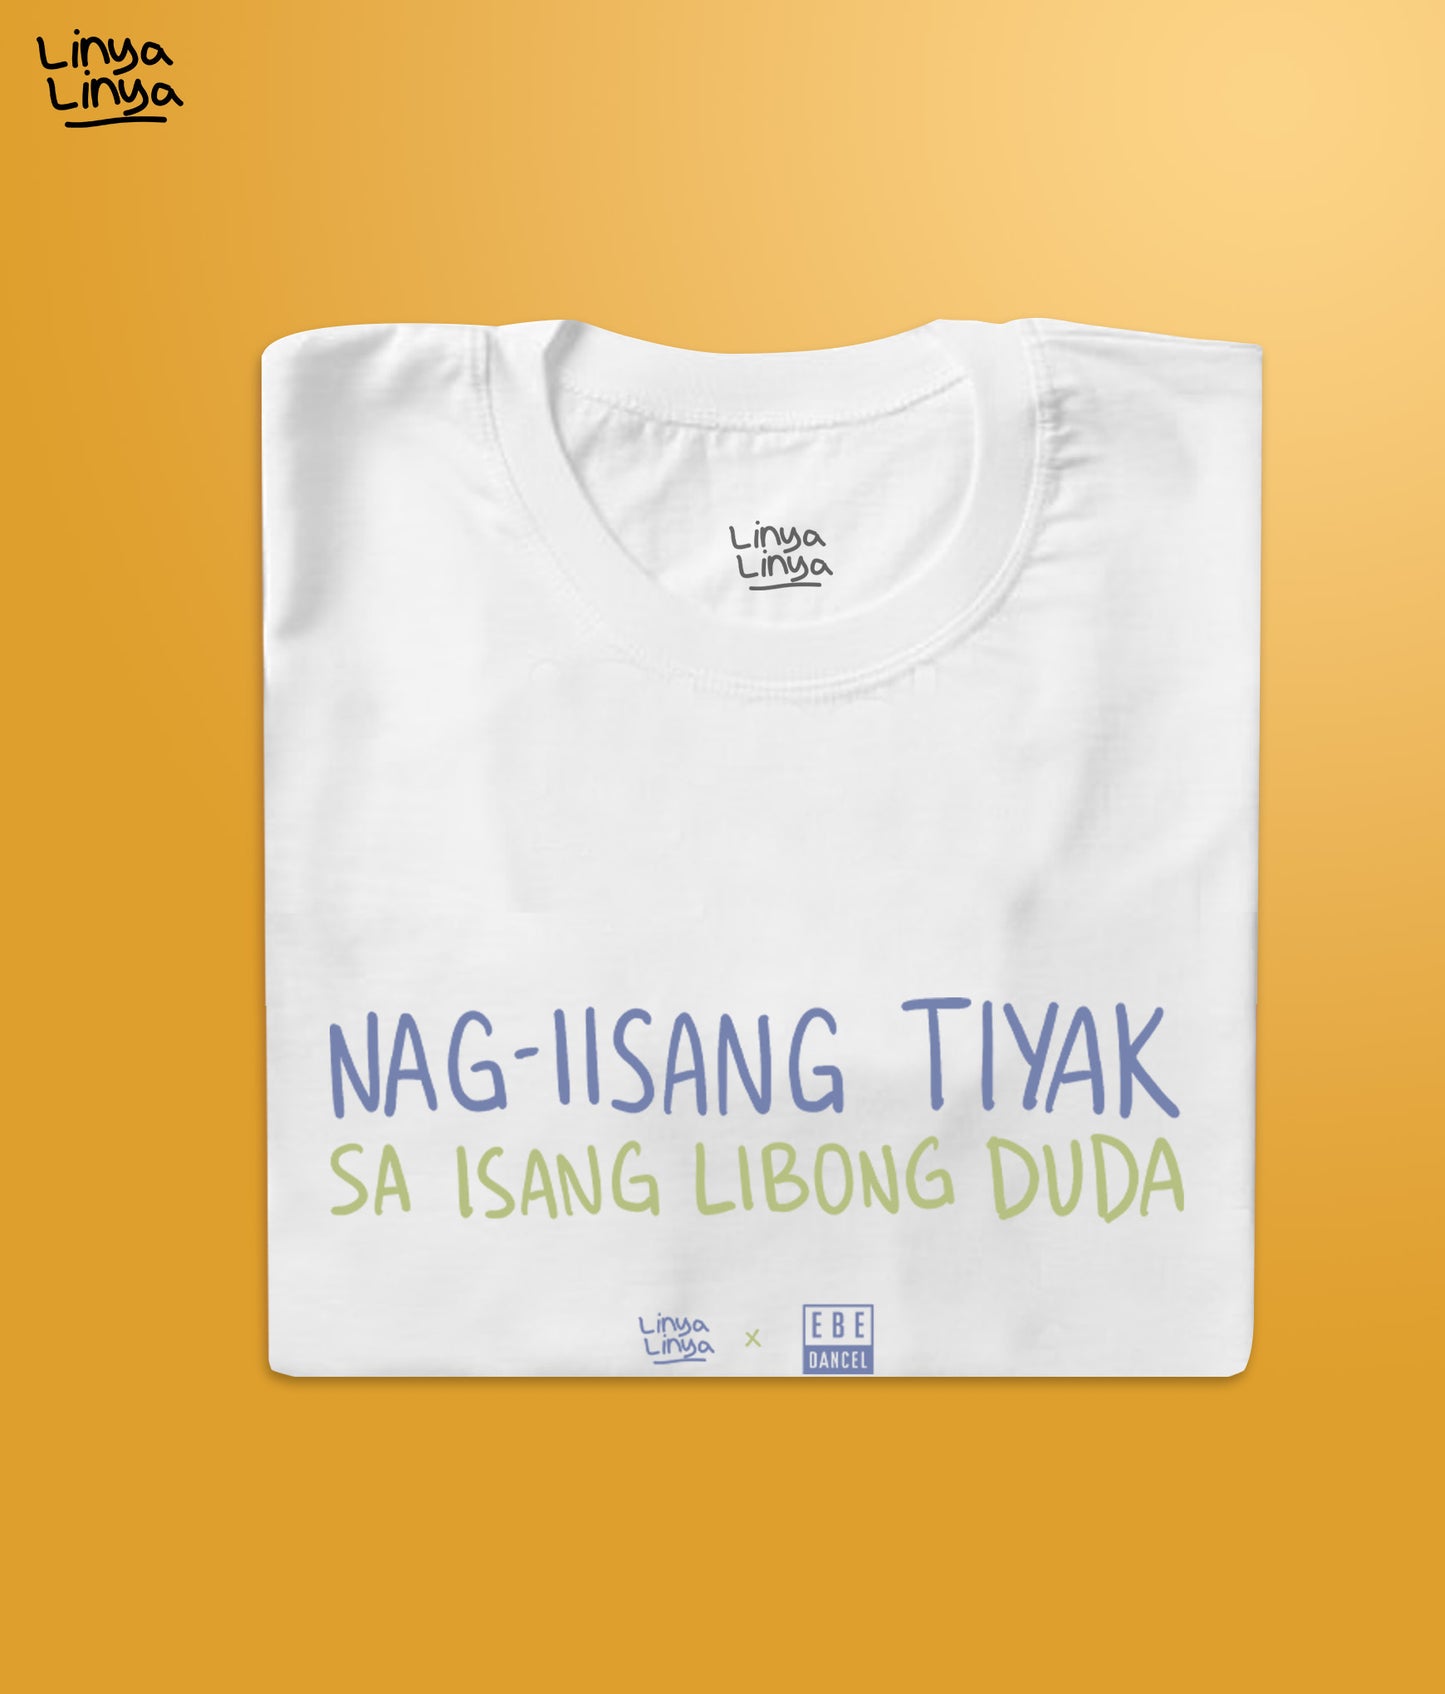 Linya-Linya x Ebe Dancel: Nag-Iisang Tiyak Sa Isang Libong Duda (White)